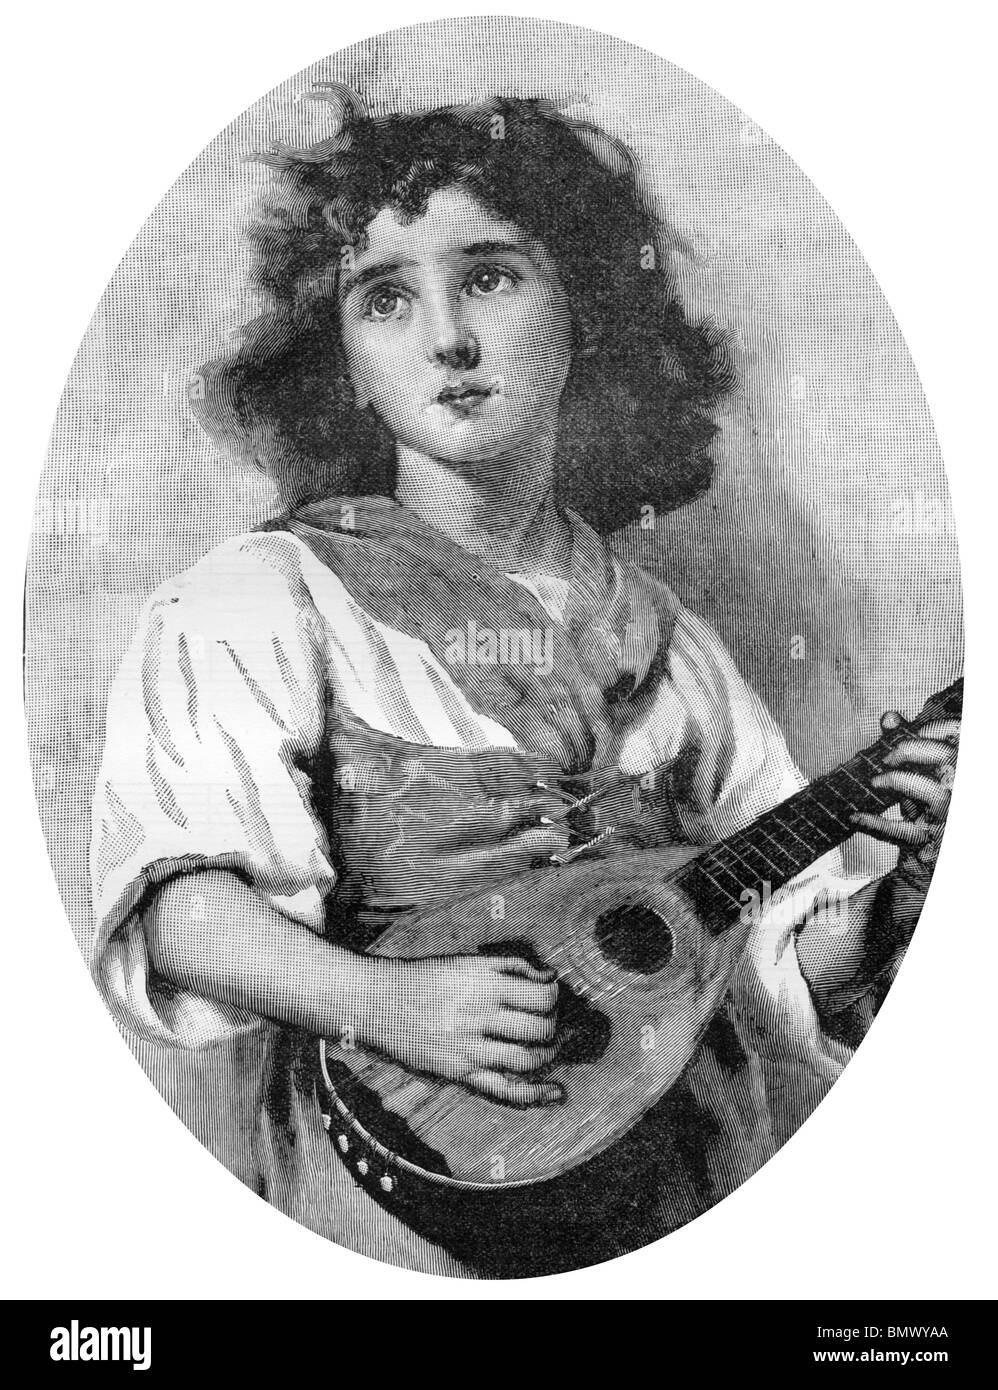 Femme jouant de la guitare Banque D'Images